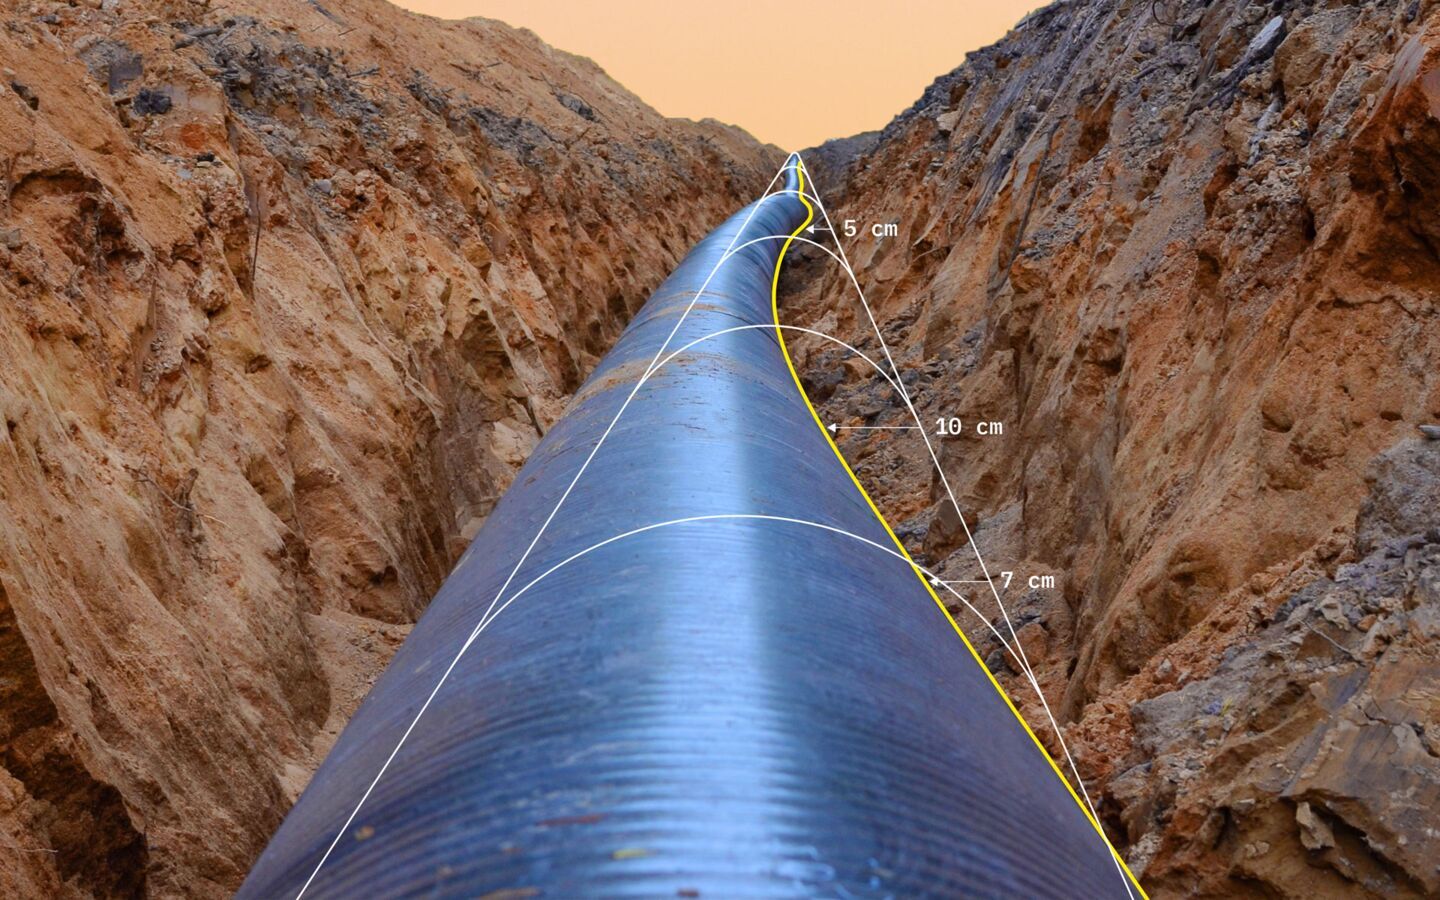 Pipeline movement assessment